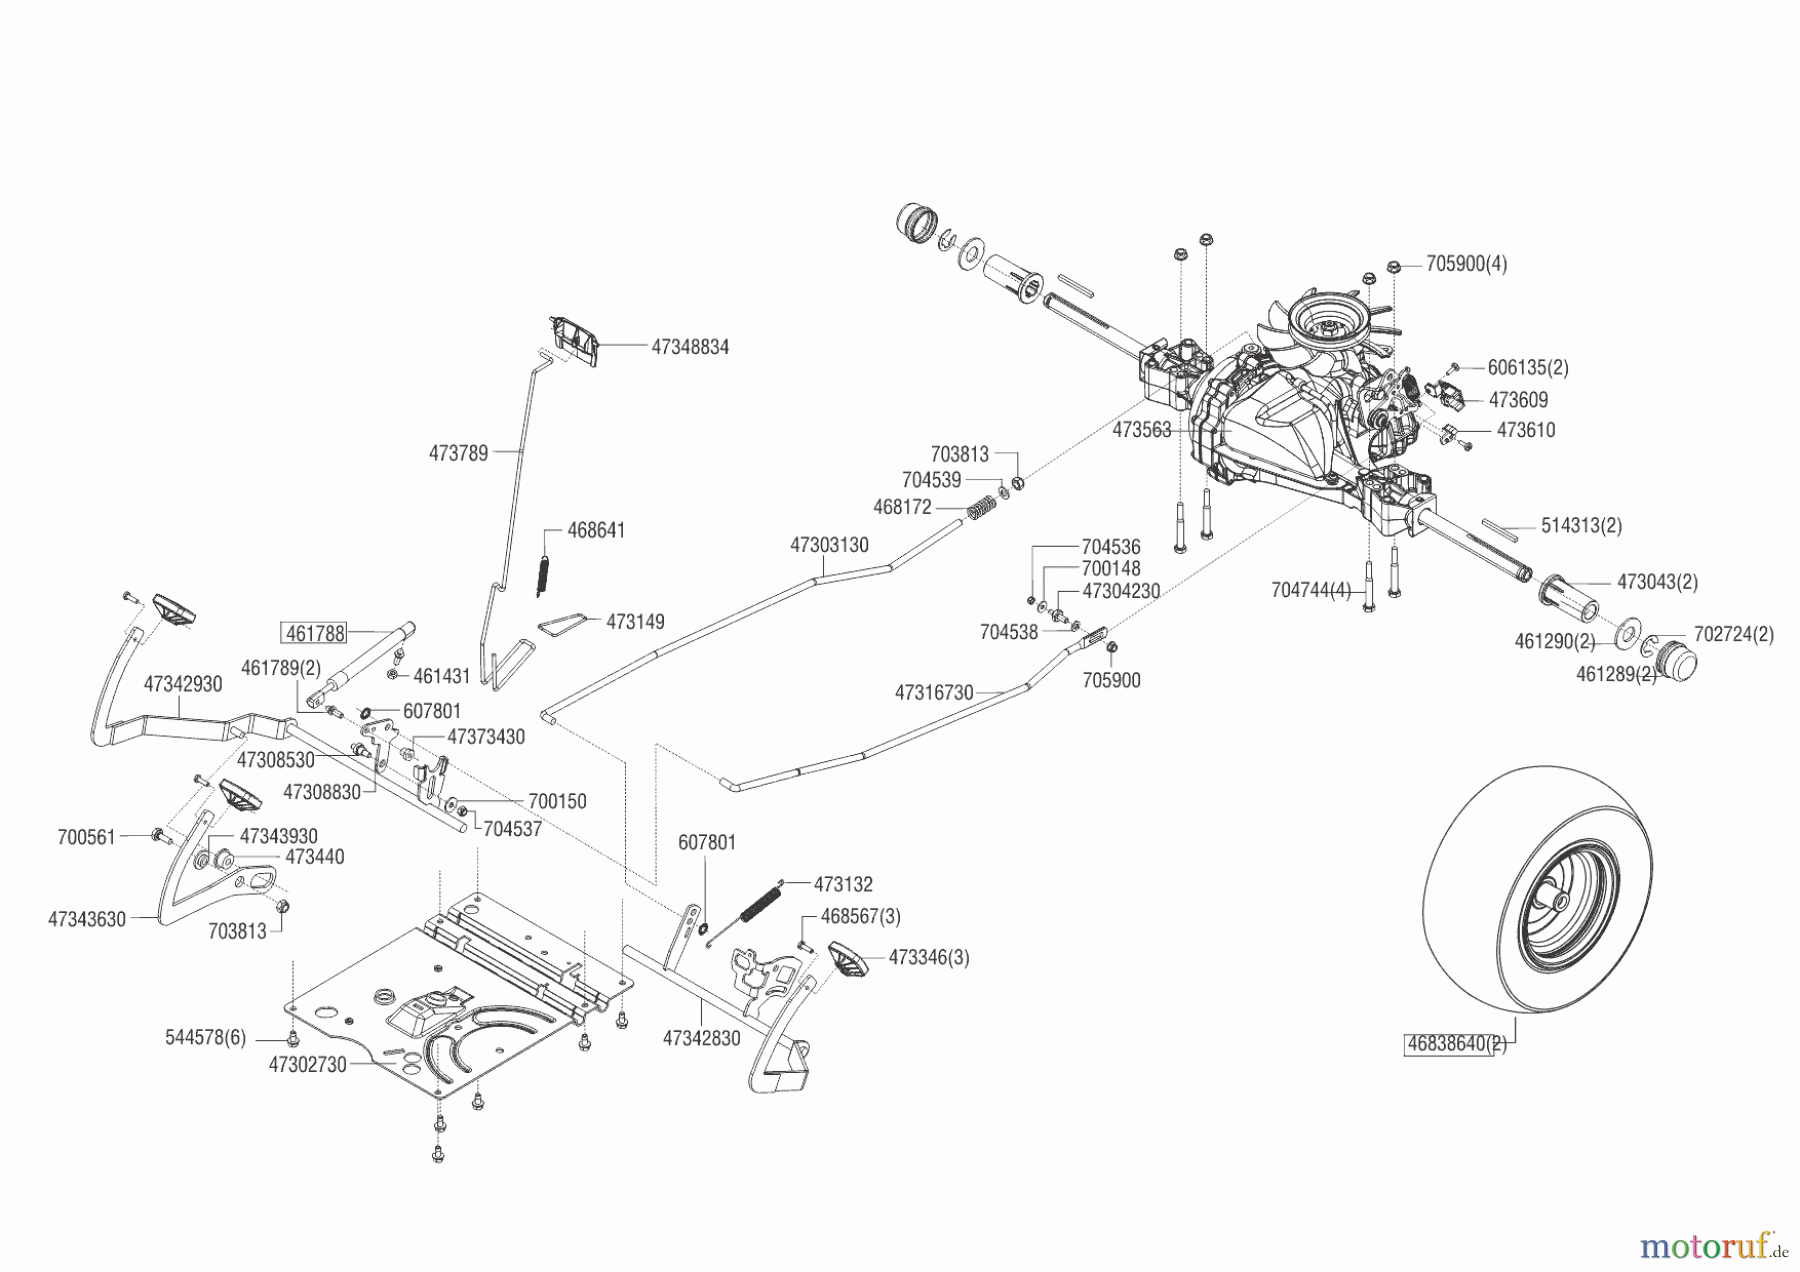  Powerline Gartentechnik Rasentraktor T 16-105.4 HD V2  05/2016 - 09/2016 Seite 4